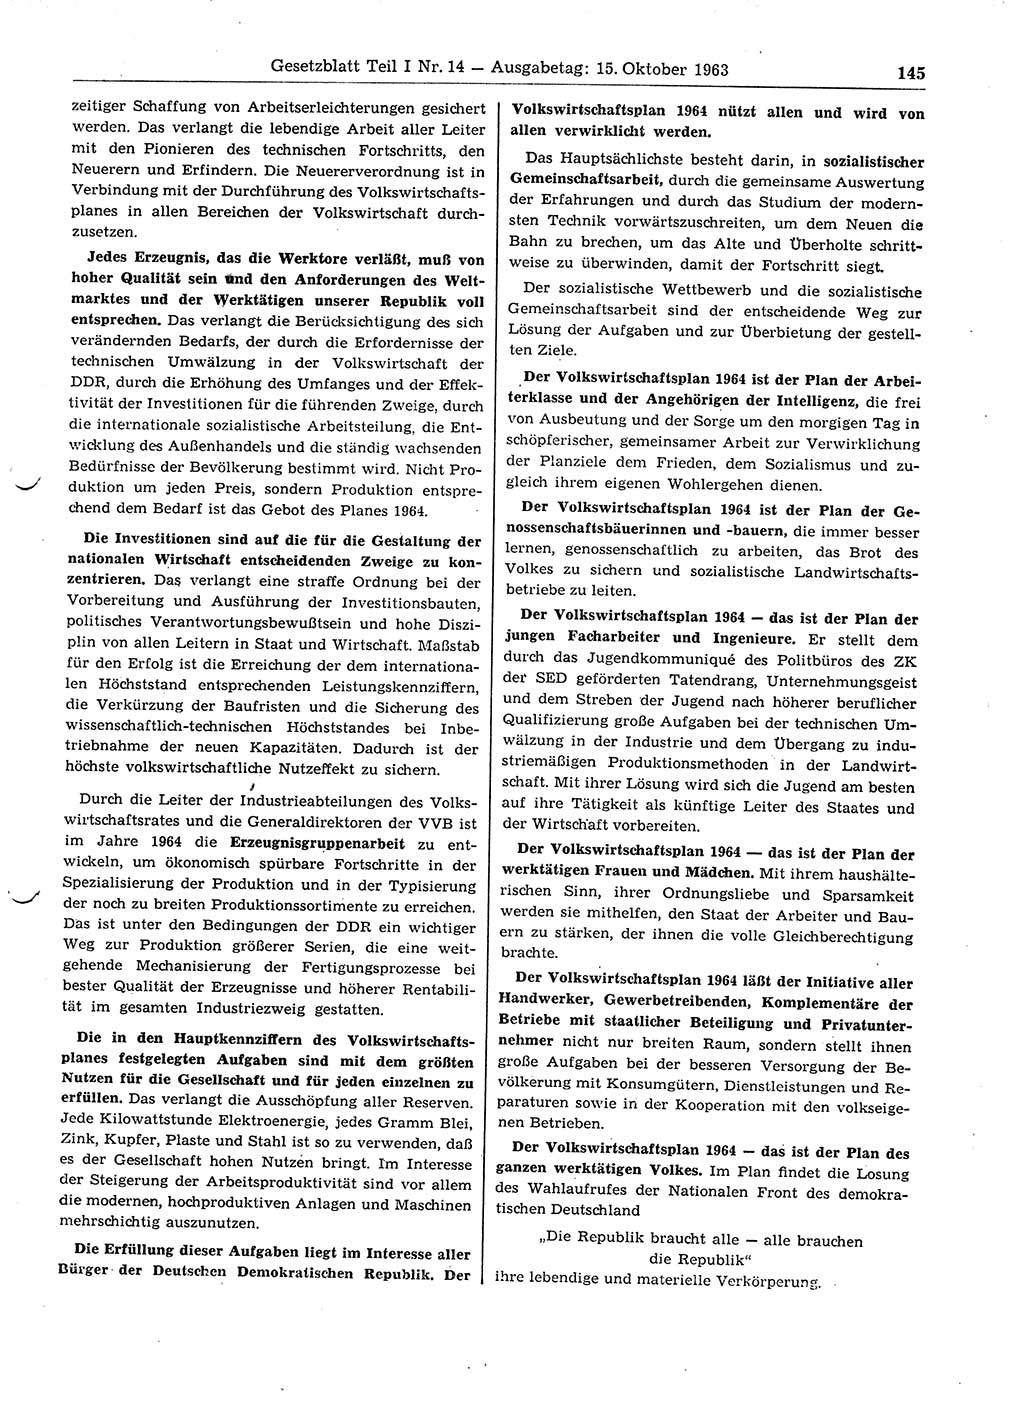 Gesetzblatt (GBl.) der Deutschen Demokratischen Republik (DDR) Teil Ⅰ 1963, Seite 145 (GBl. DDR Ⅰ 1963, S. 145)